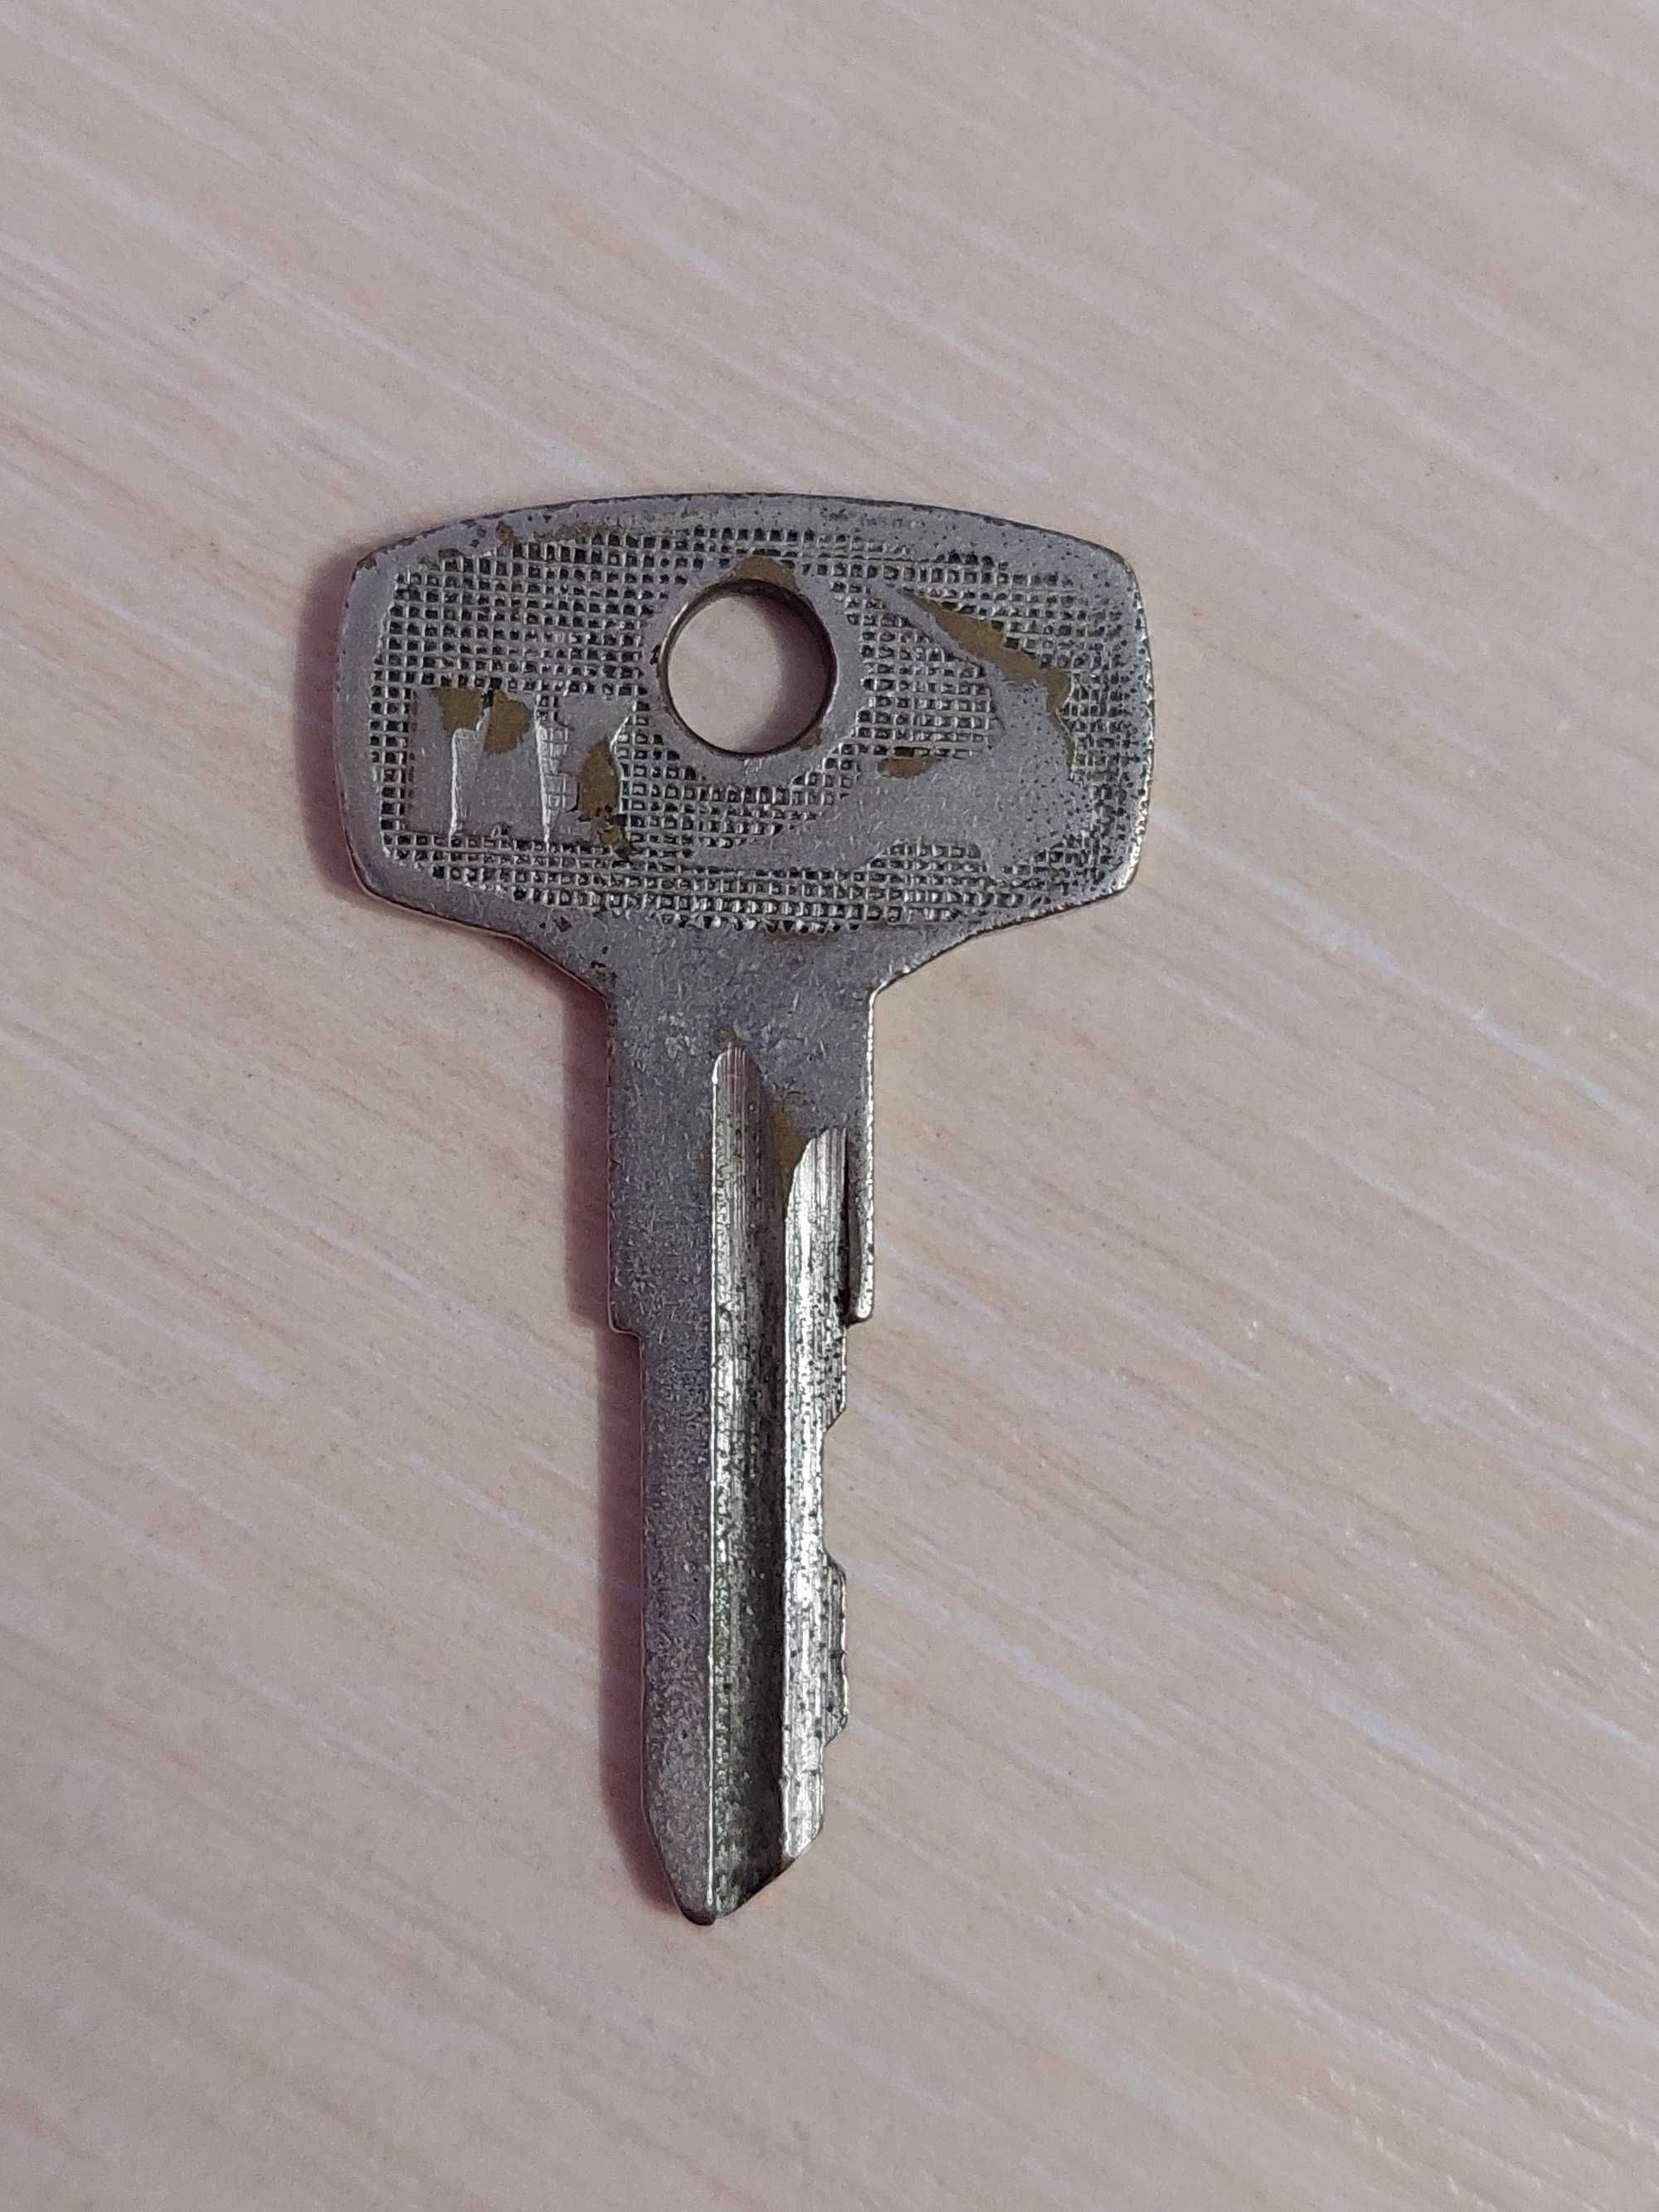 Ключ от замка ГАЗ # 585